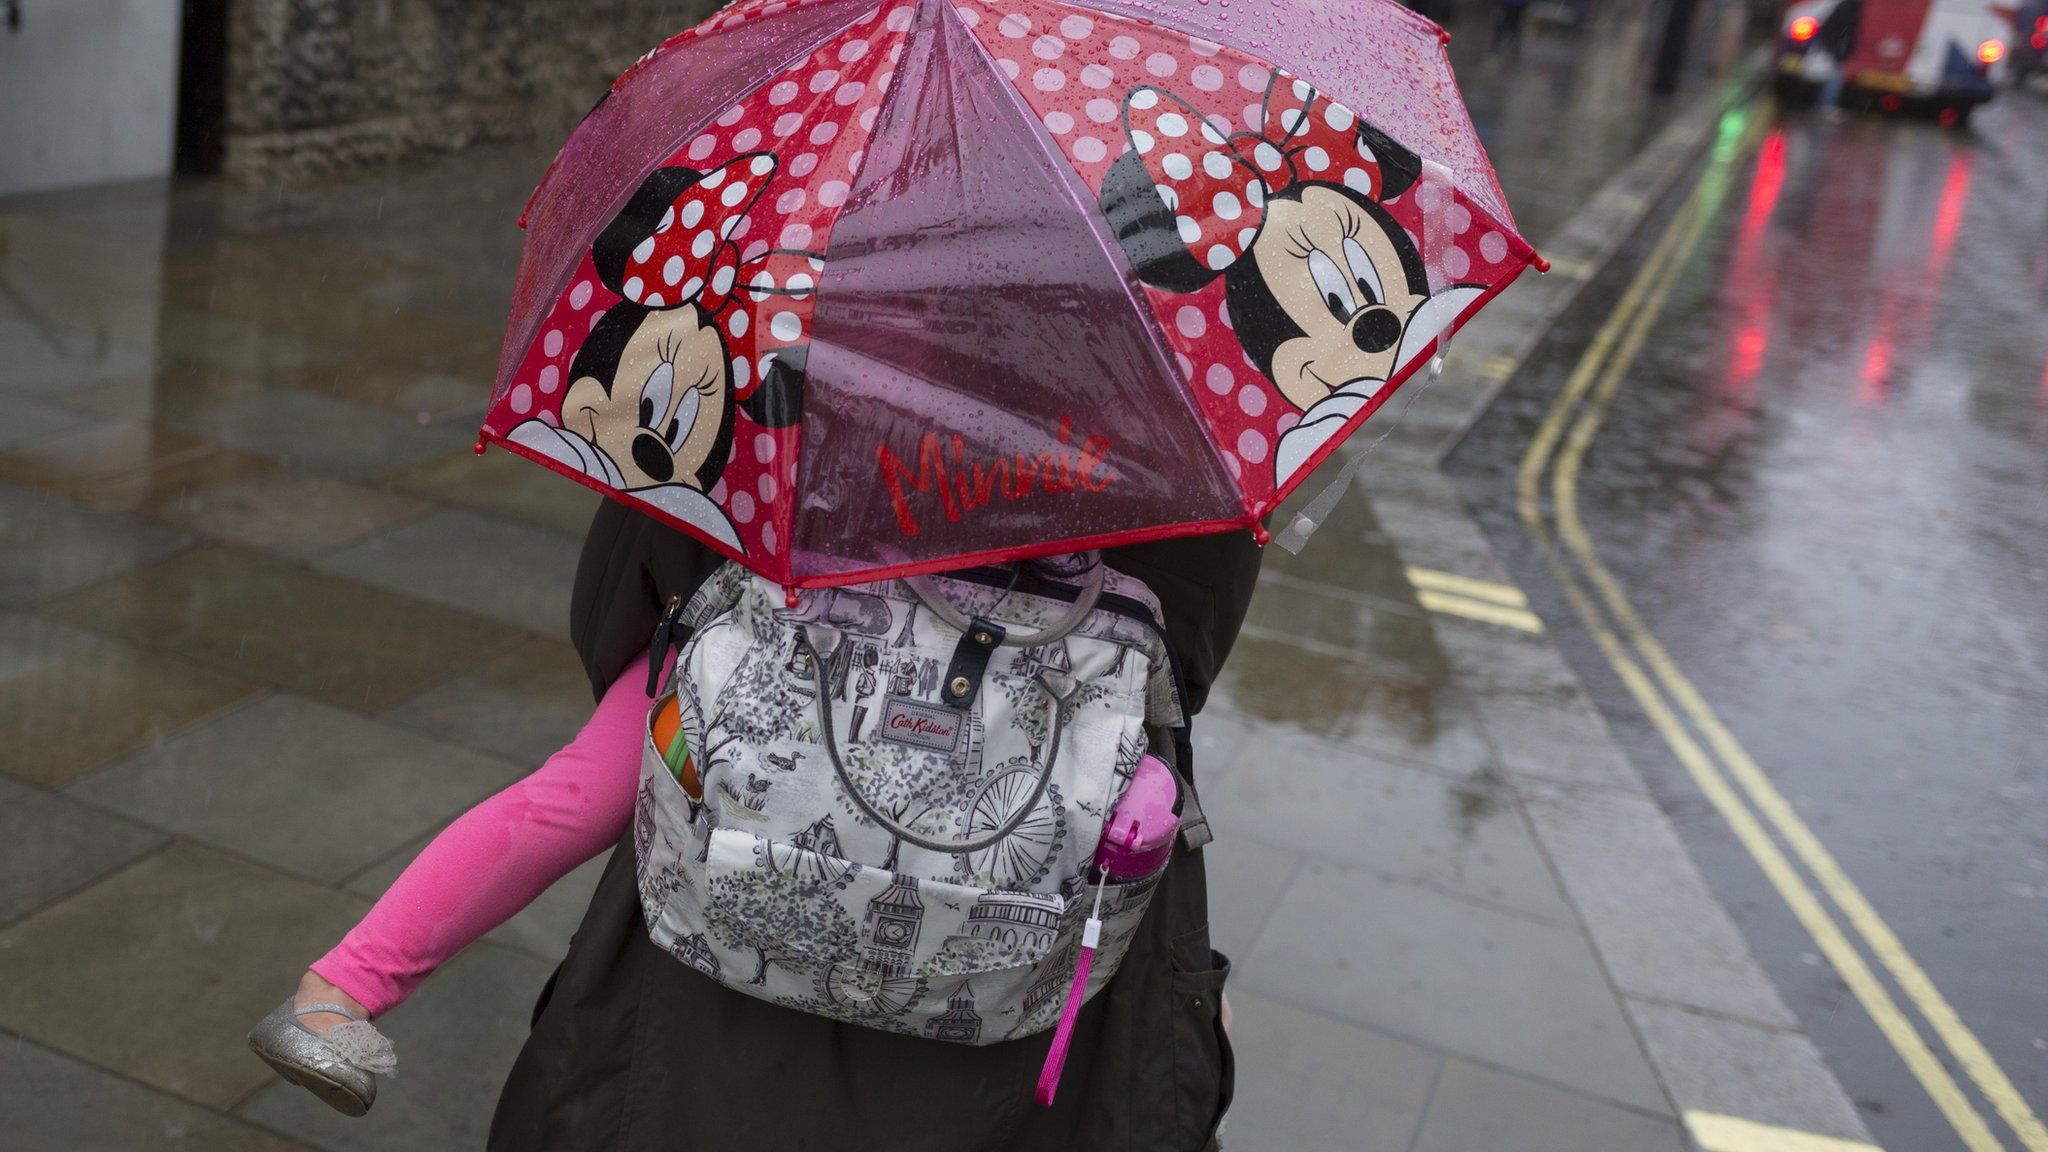 Minnie Mouse umbrella in the rain